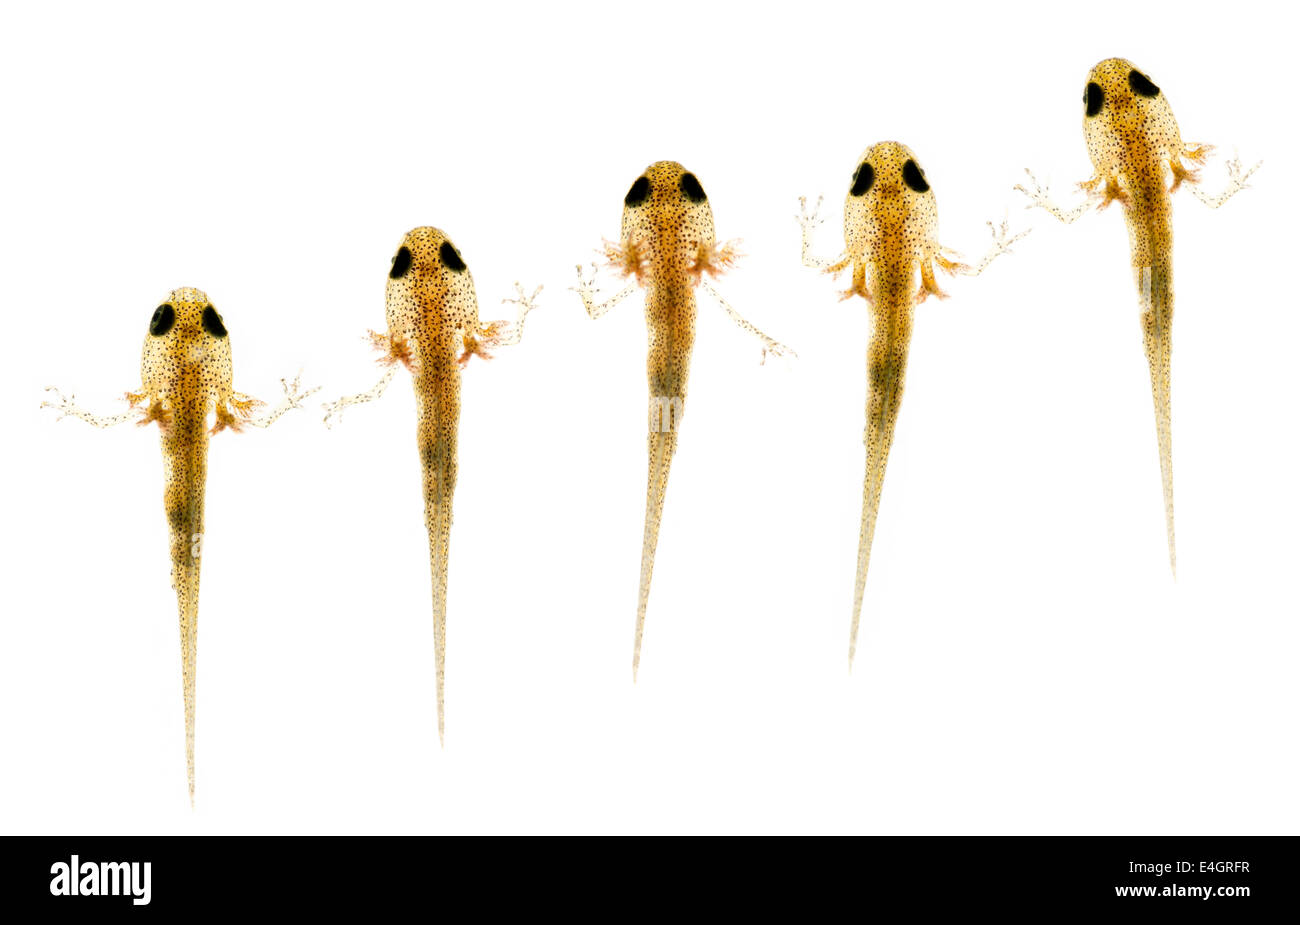 gemeinsamen glatt Newt jungen Larven Vorderbeine mit externen gefiederte Kiemen entwickeln werden Teich Spätsommer oder Herbst verlassen. Stockfoto